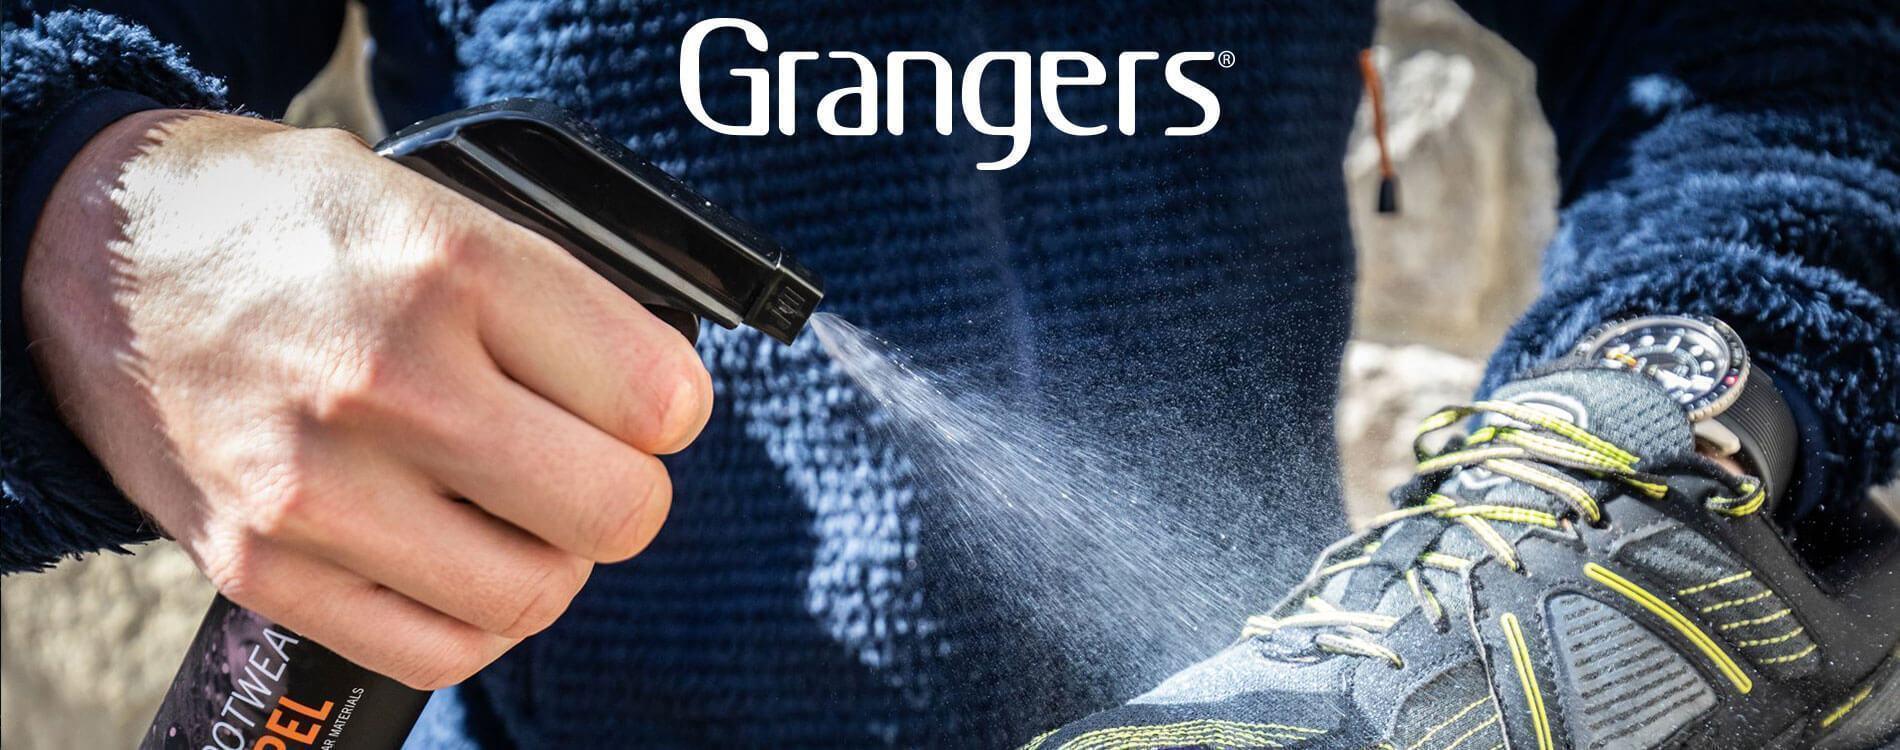 Grangers - Världens bästa impregnering och rengöring av kläder och utrustning - TacNGear